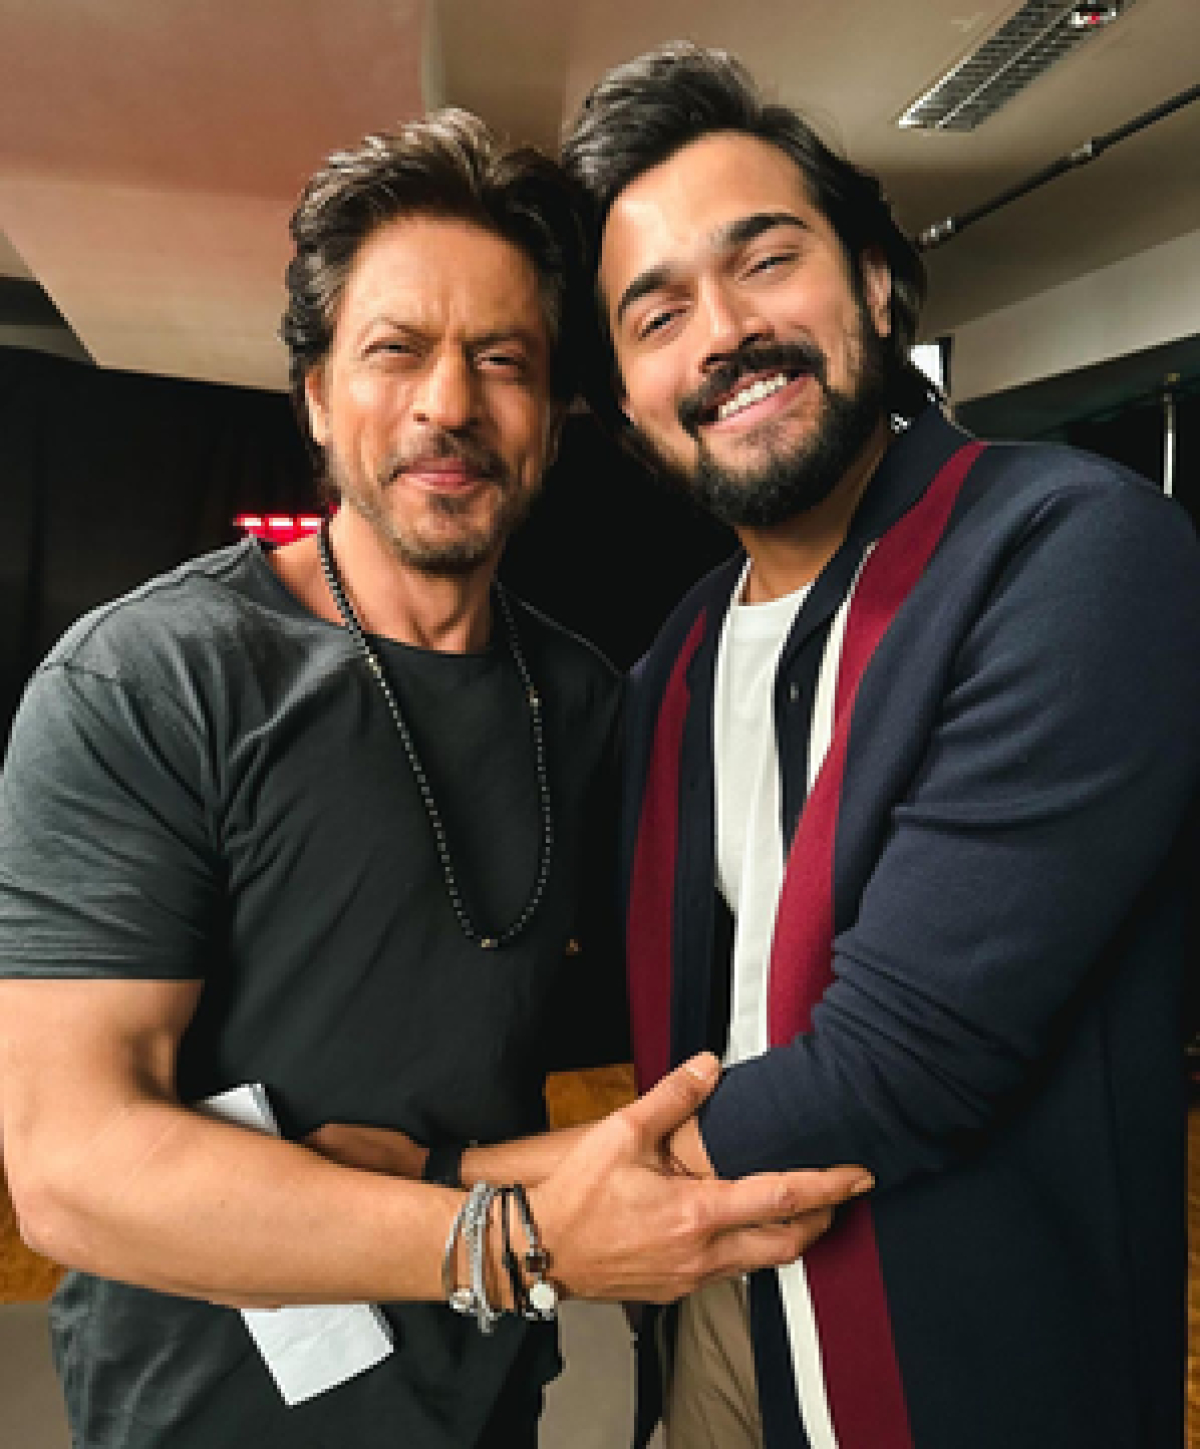 शाहरुख खान की जर्नी मेरे लिए प्रेरणादायक : भुवन बाम